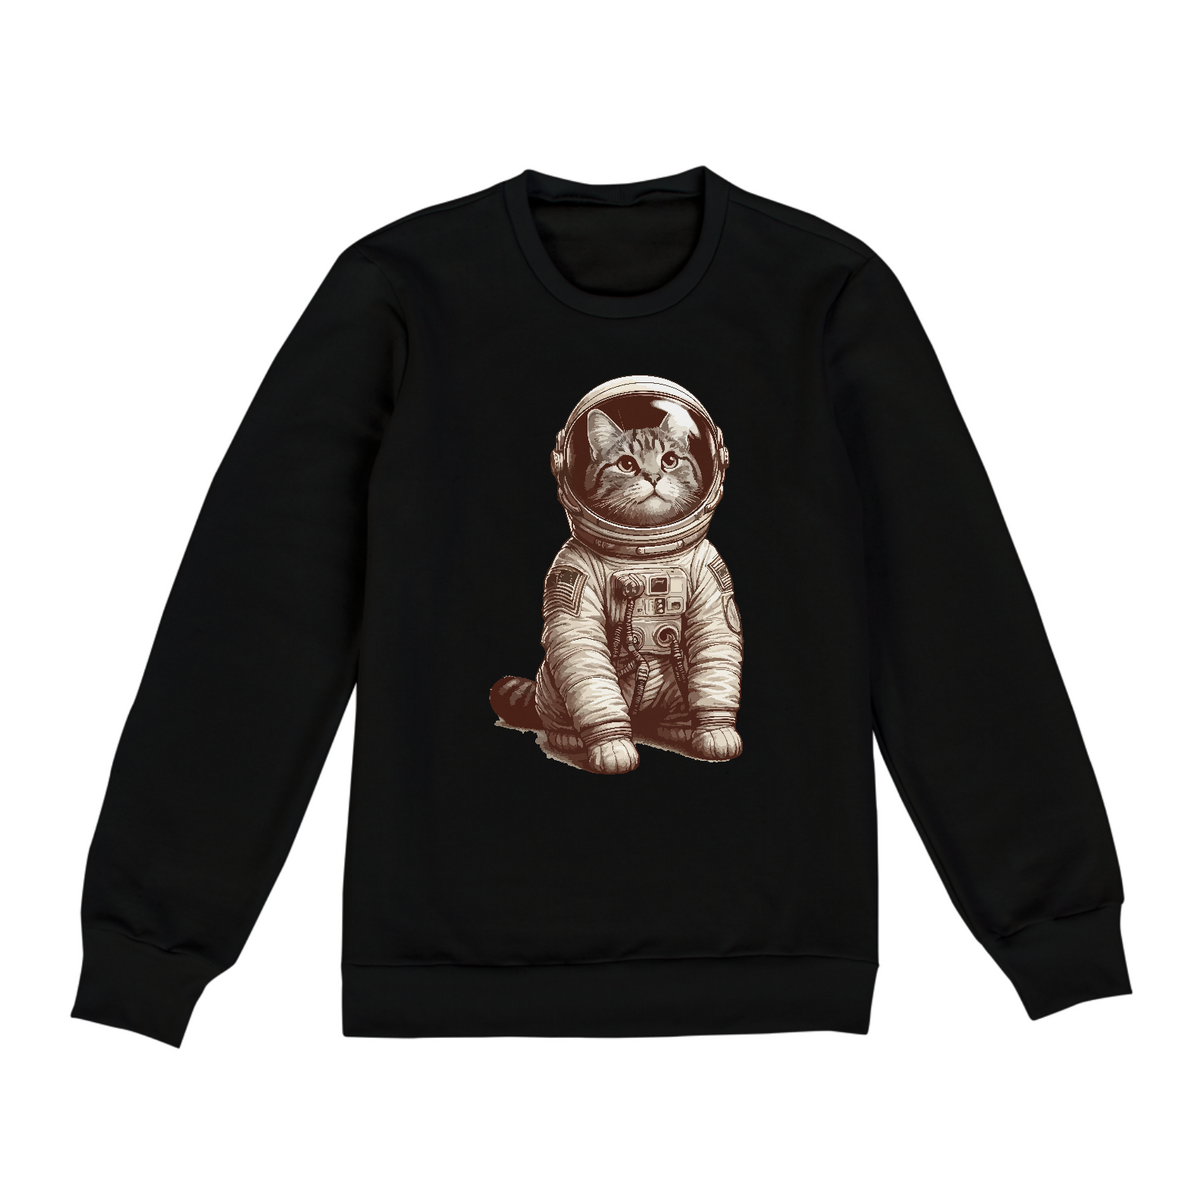 Nome do produto: Gato astronauta